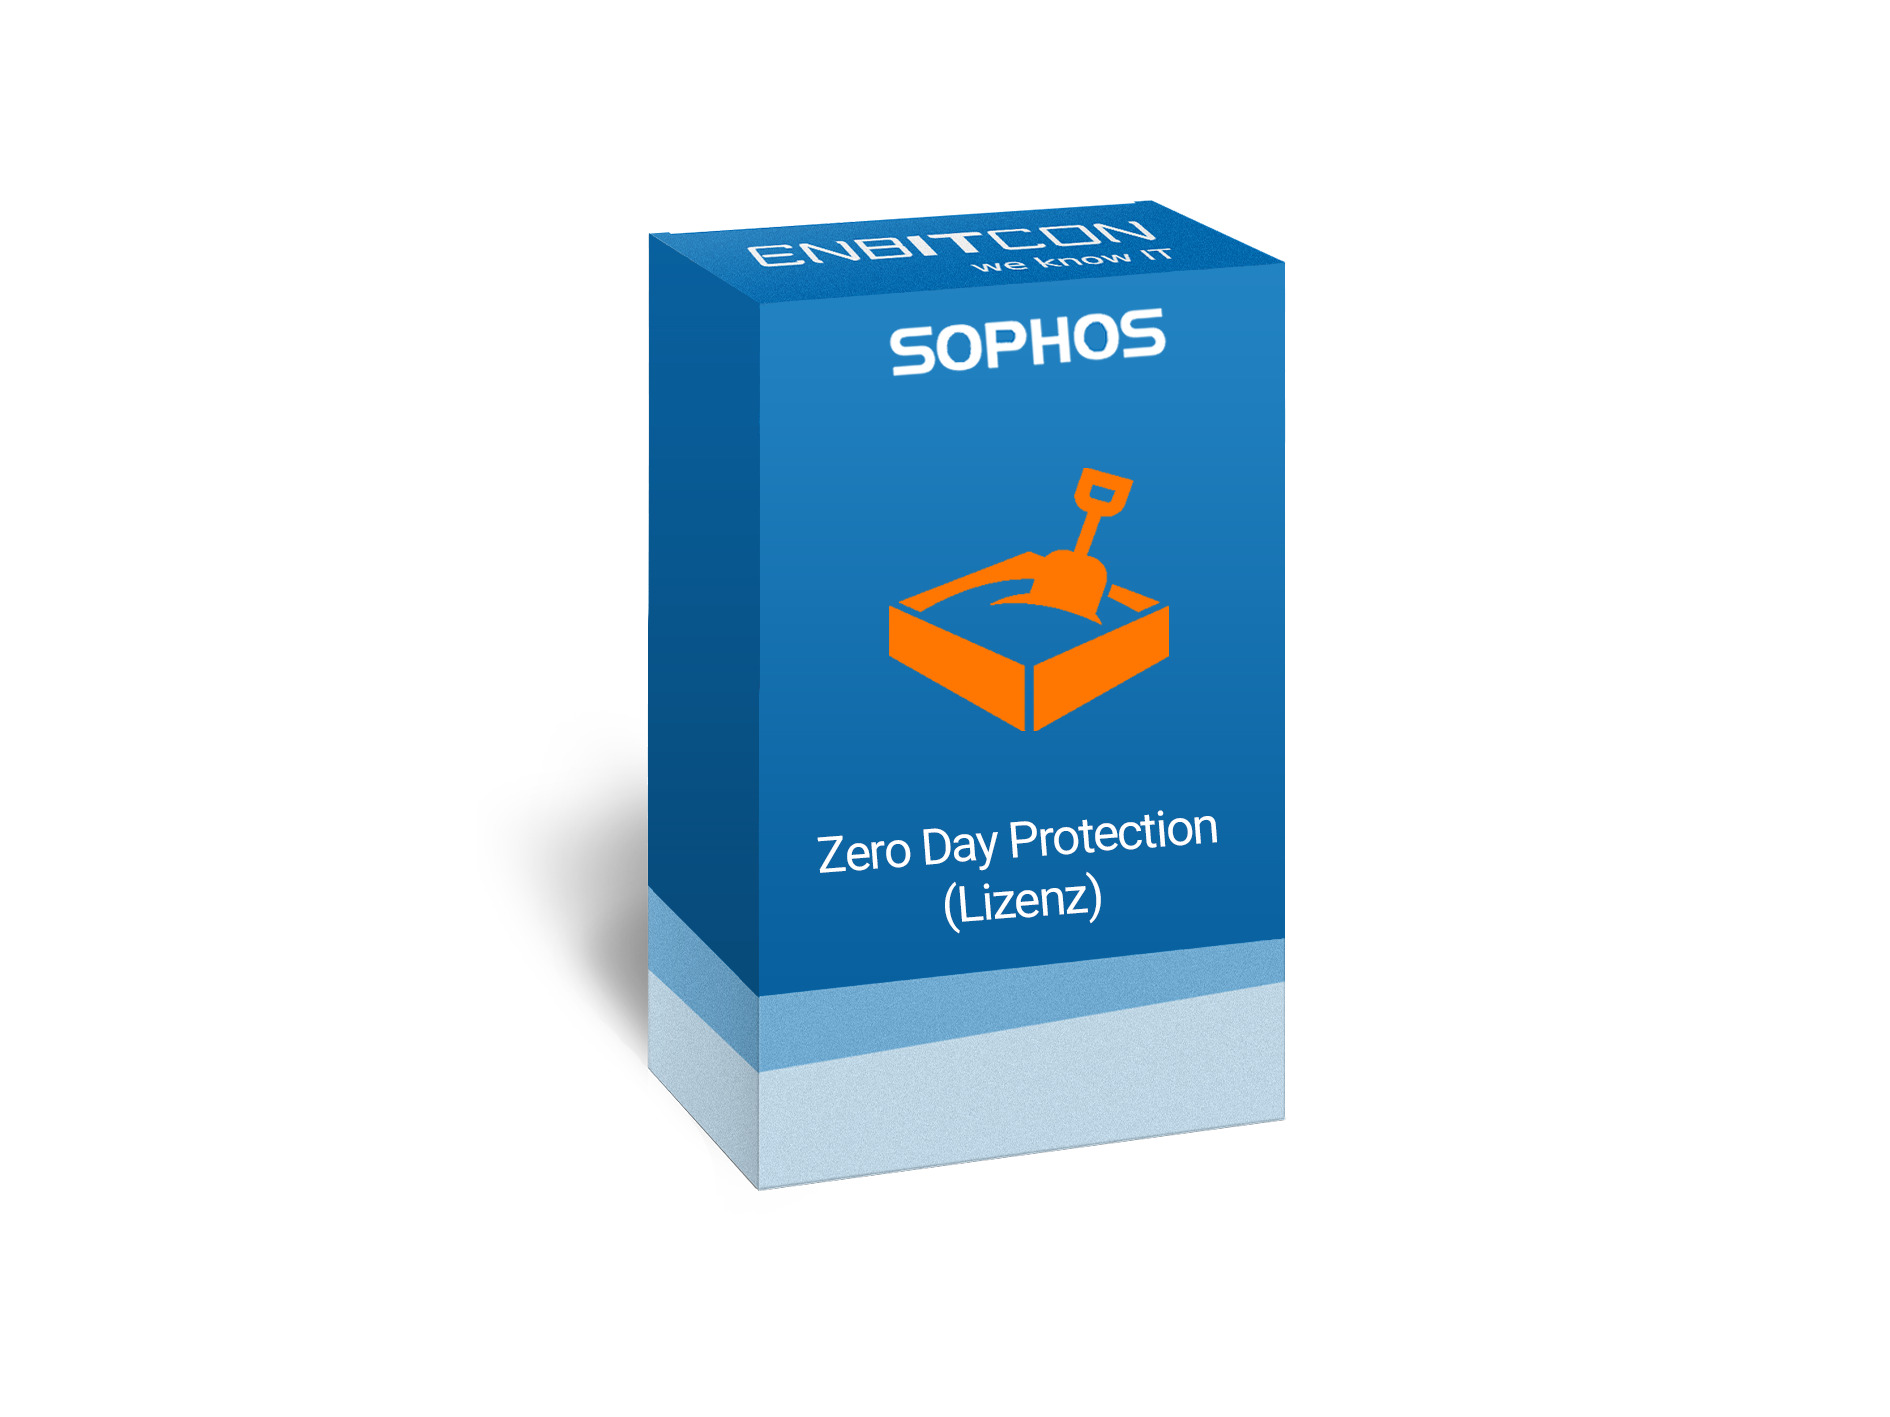 Sophos Zero Day Protection Lizenz Vorschaubild bestehend aus dem Sophos logo und einem blauen Schild, indem eine orangene Truhe befindet